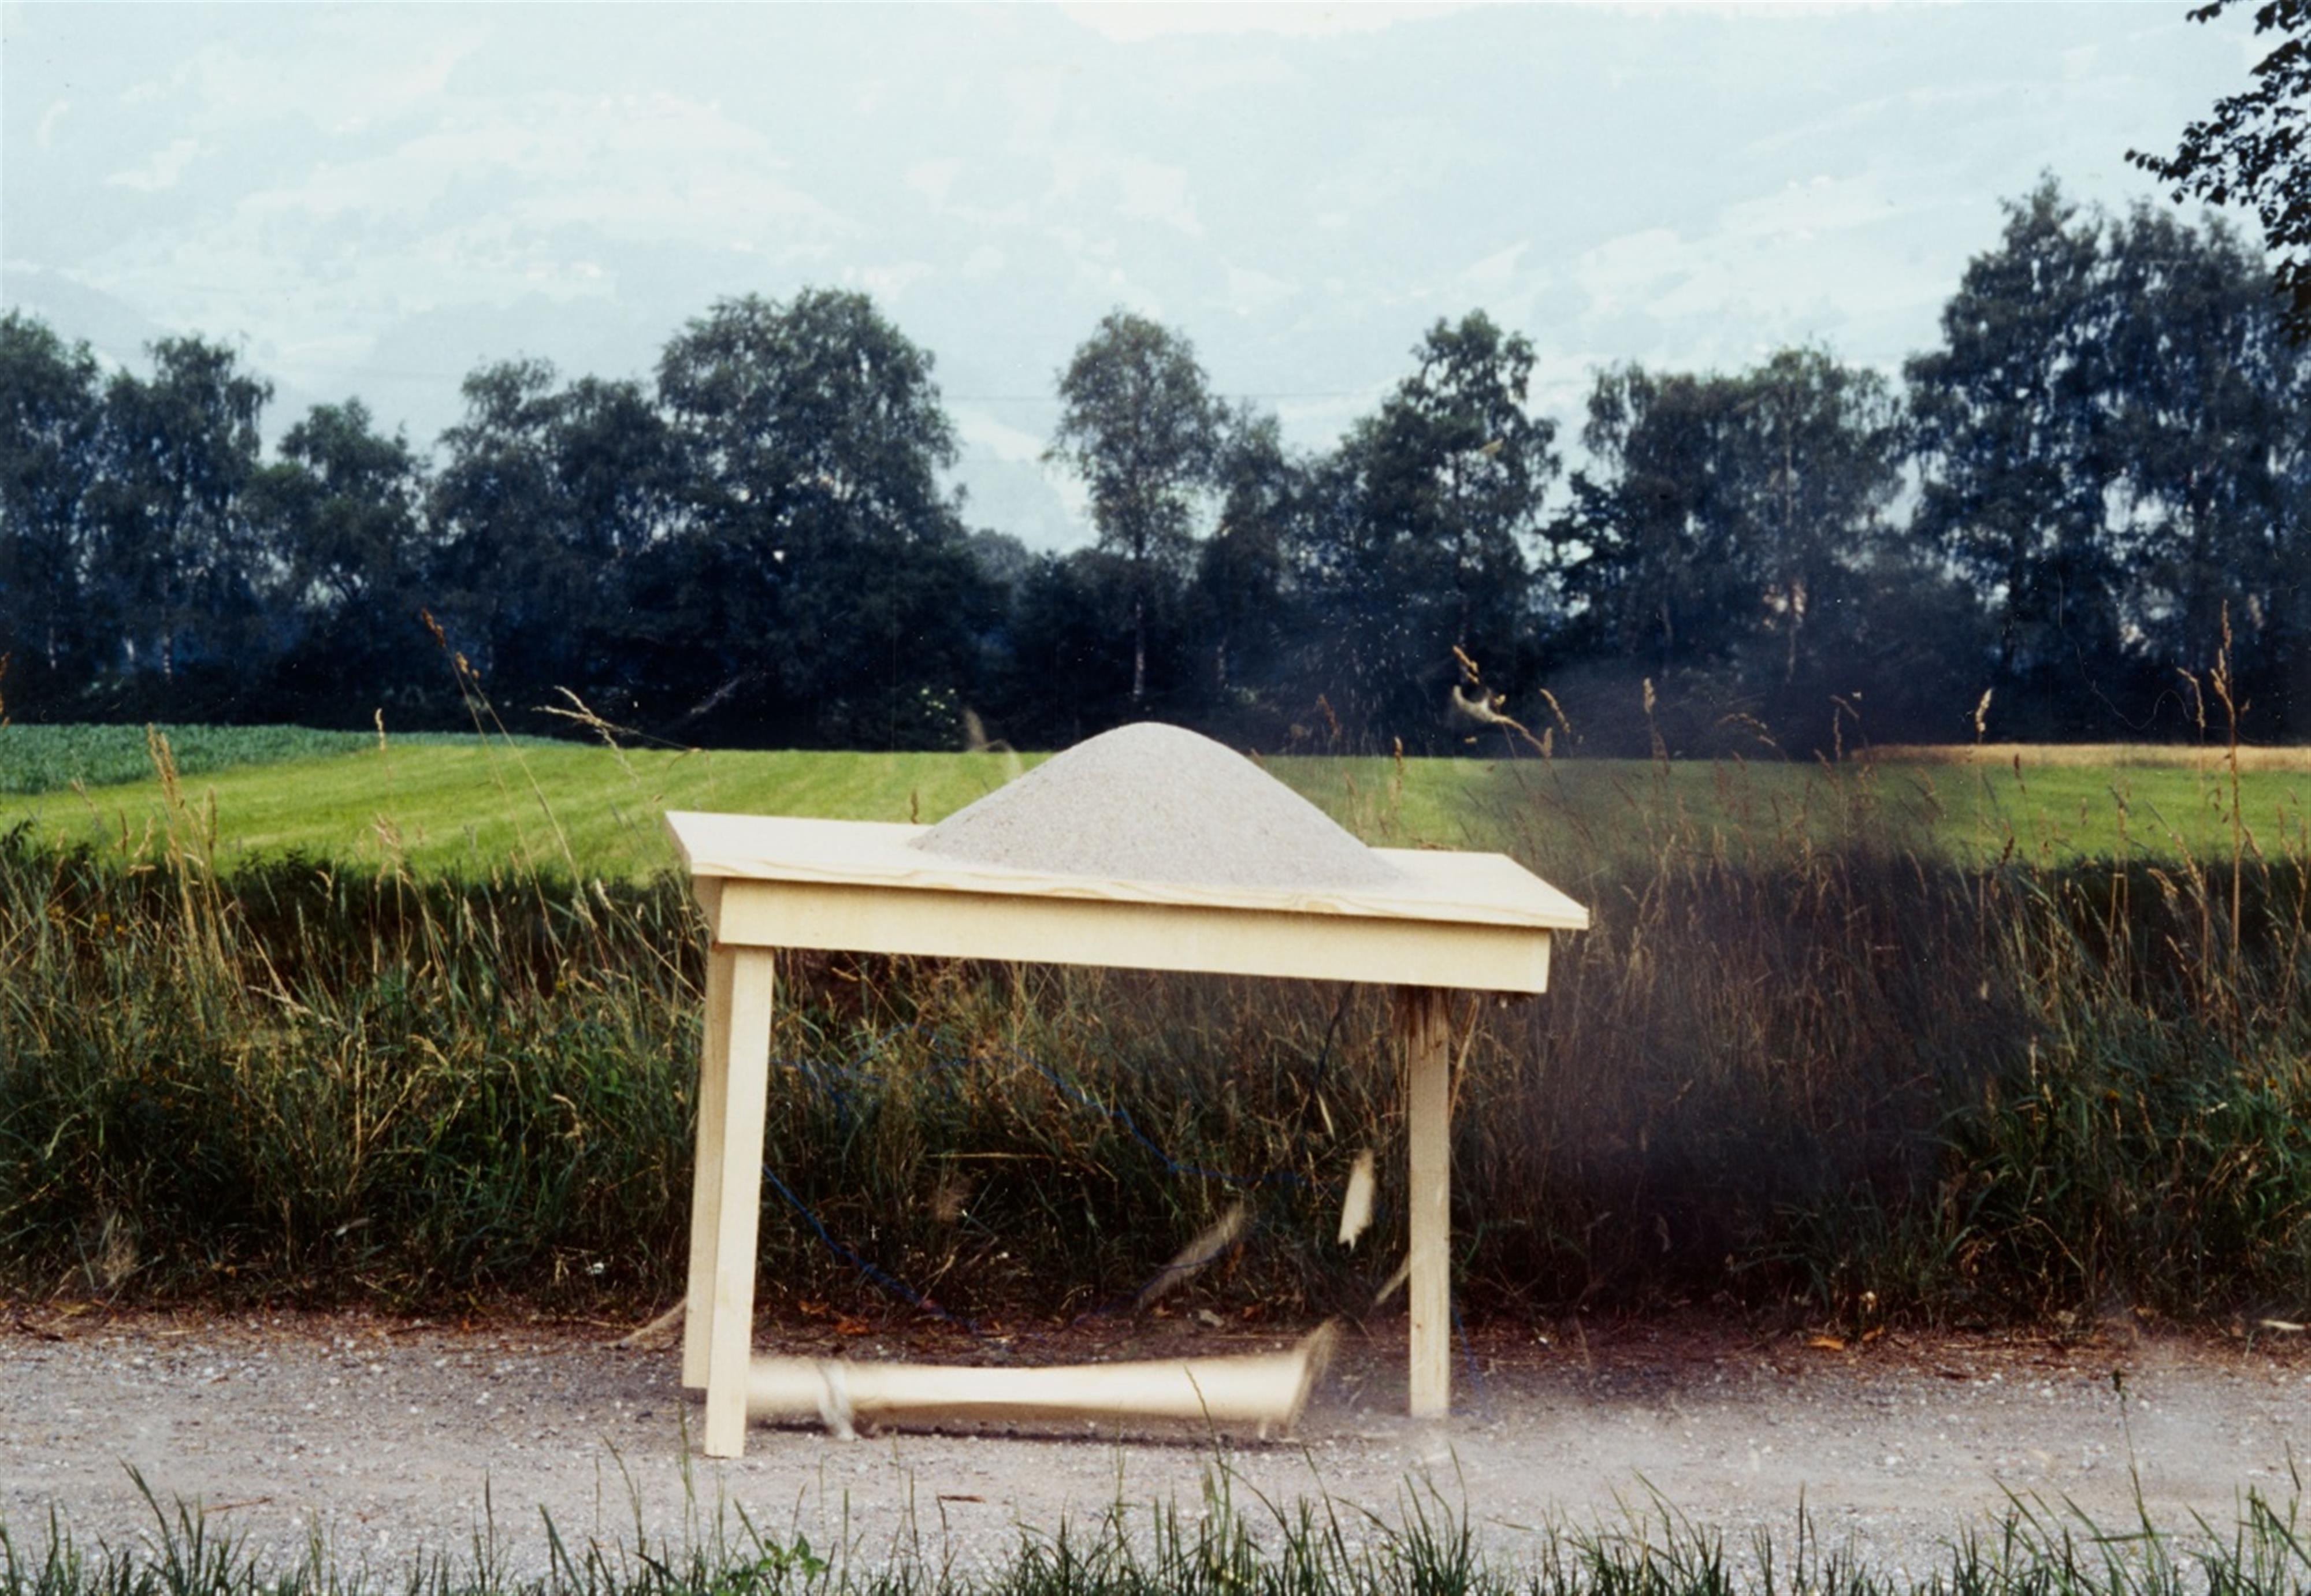 Roman Signer - Tisch mit Sandkegel - image-3